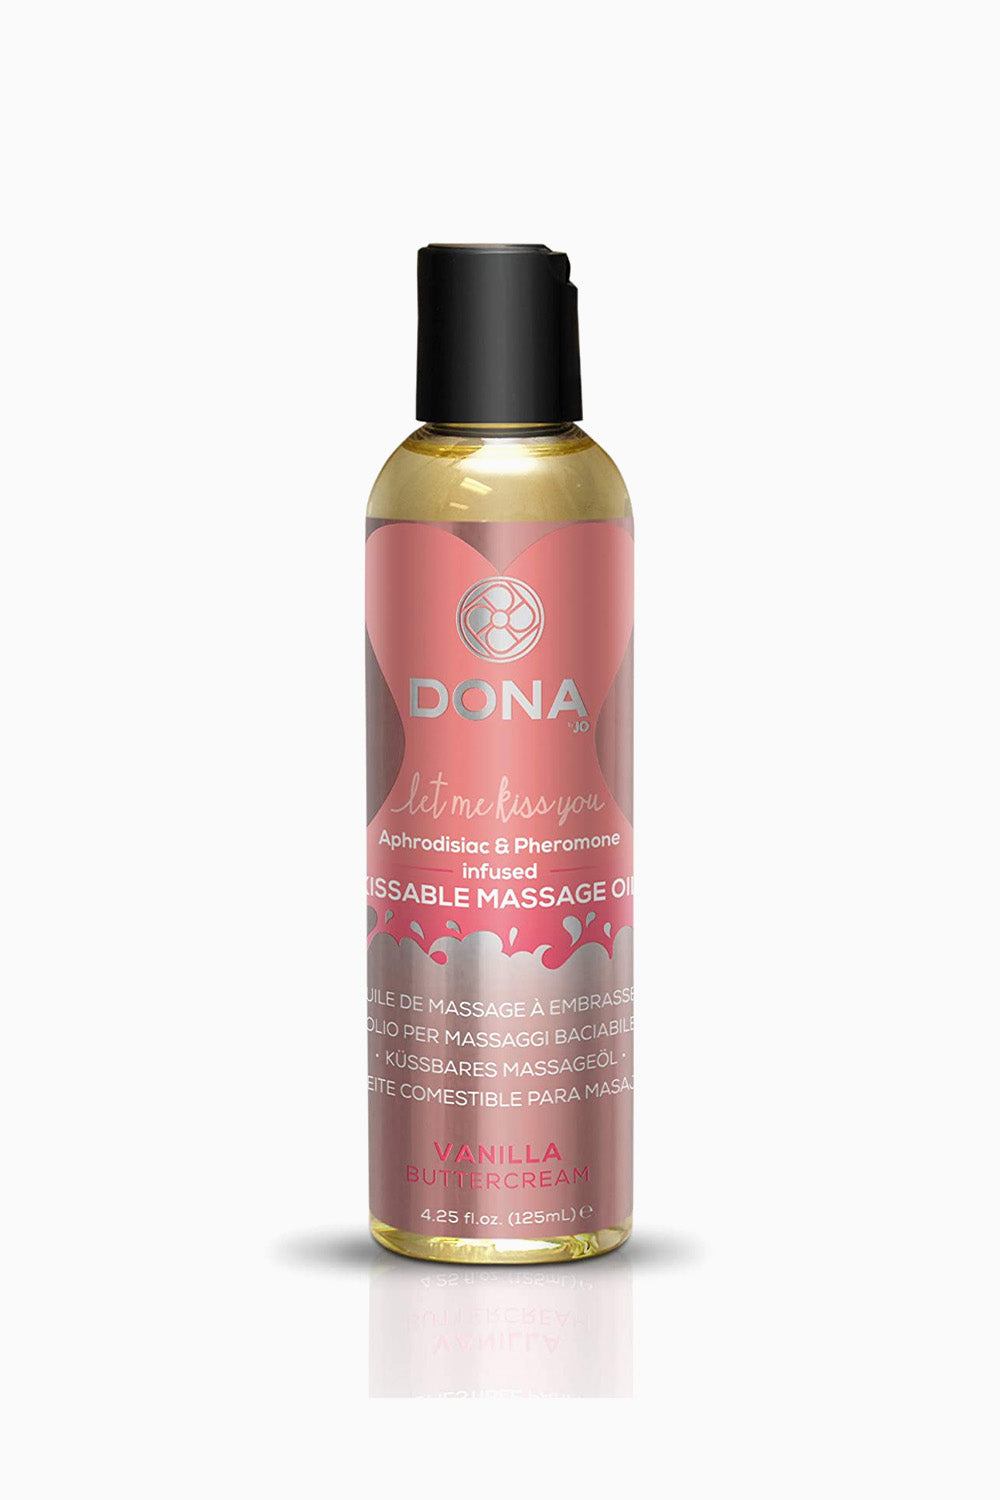 Dona Kissable Massage Oil 110 ml - Vanilla Buttercream